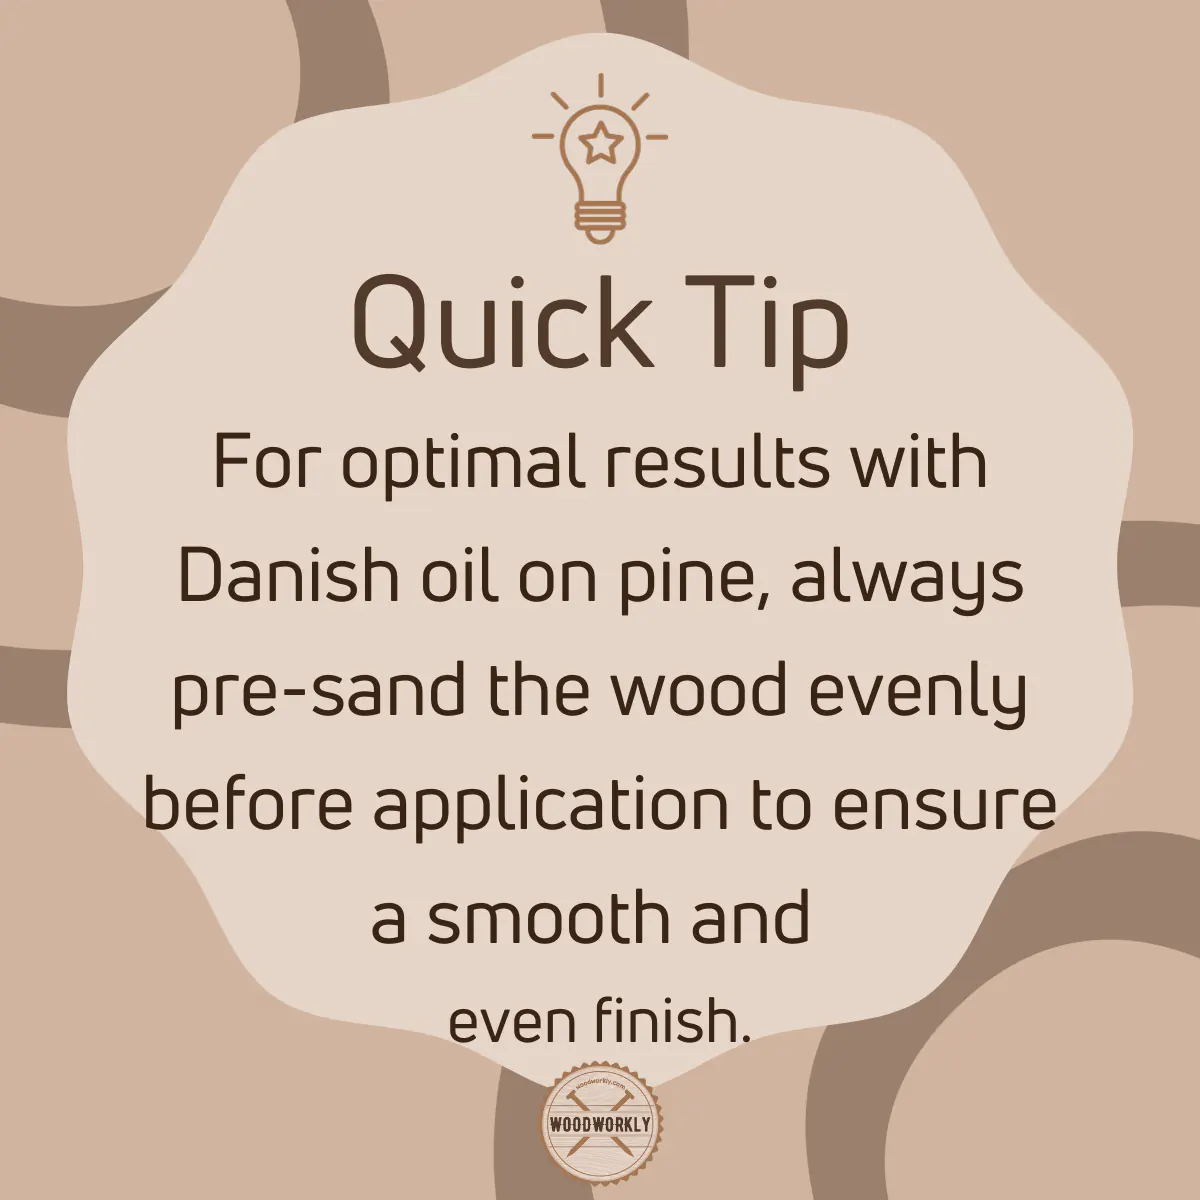 Tip for using Danish oil on pine